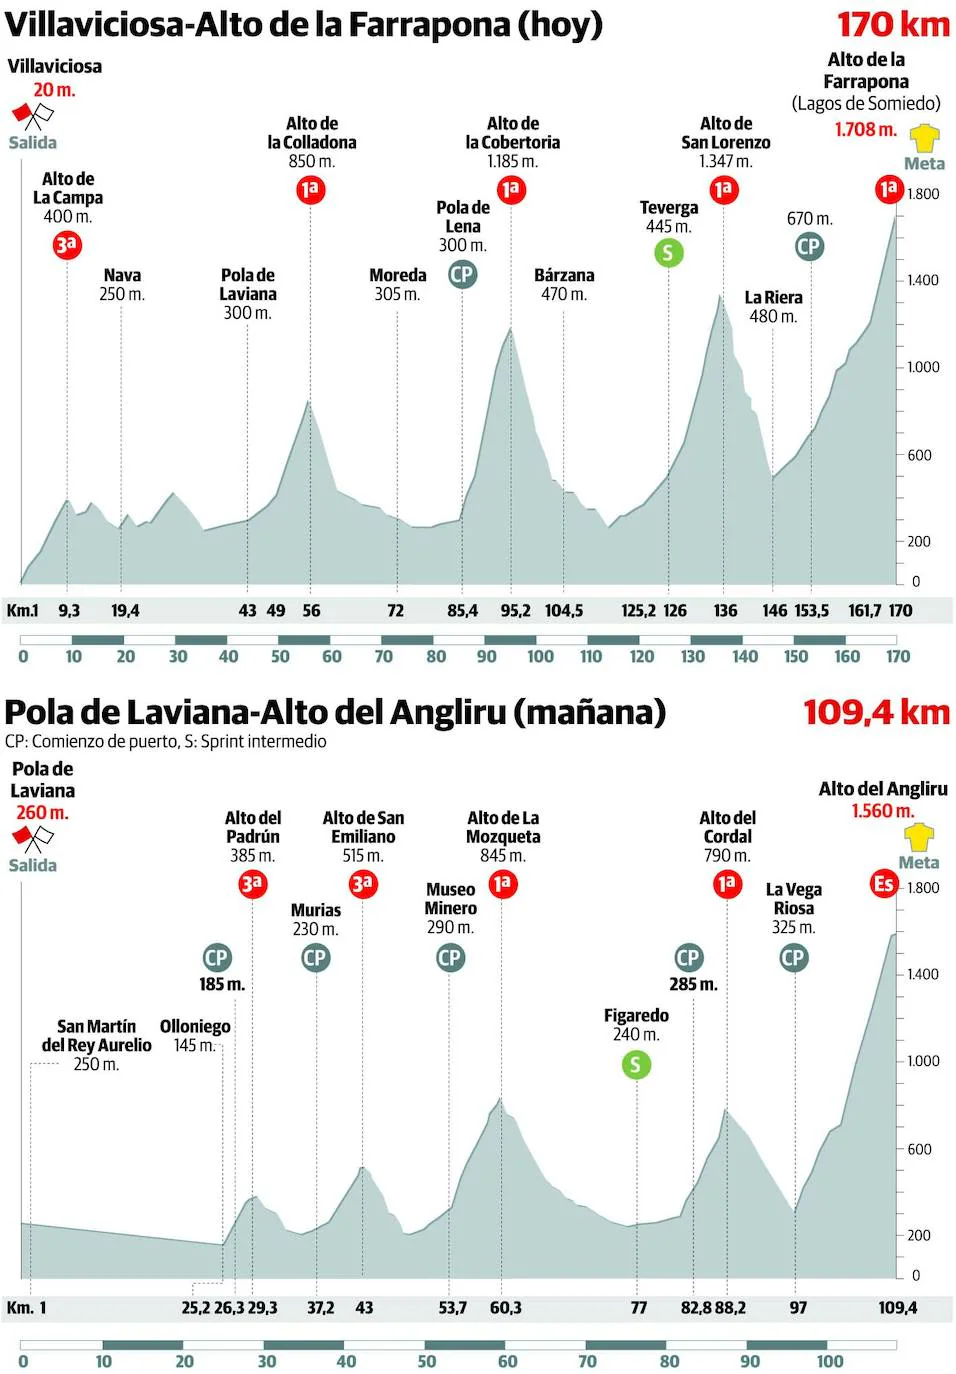 Asturias decide la Vuelta a España